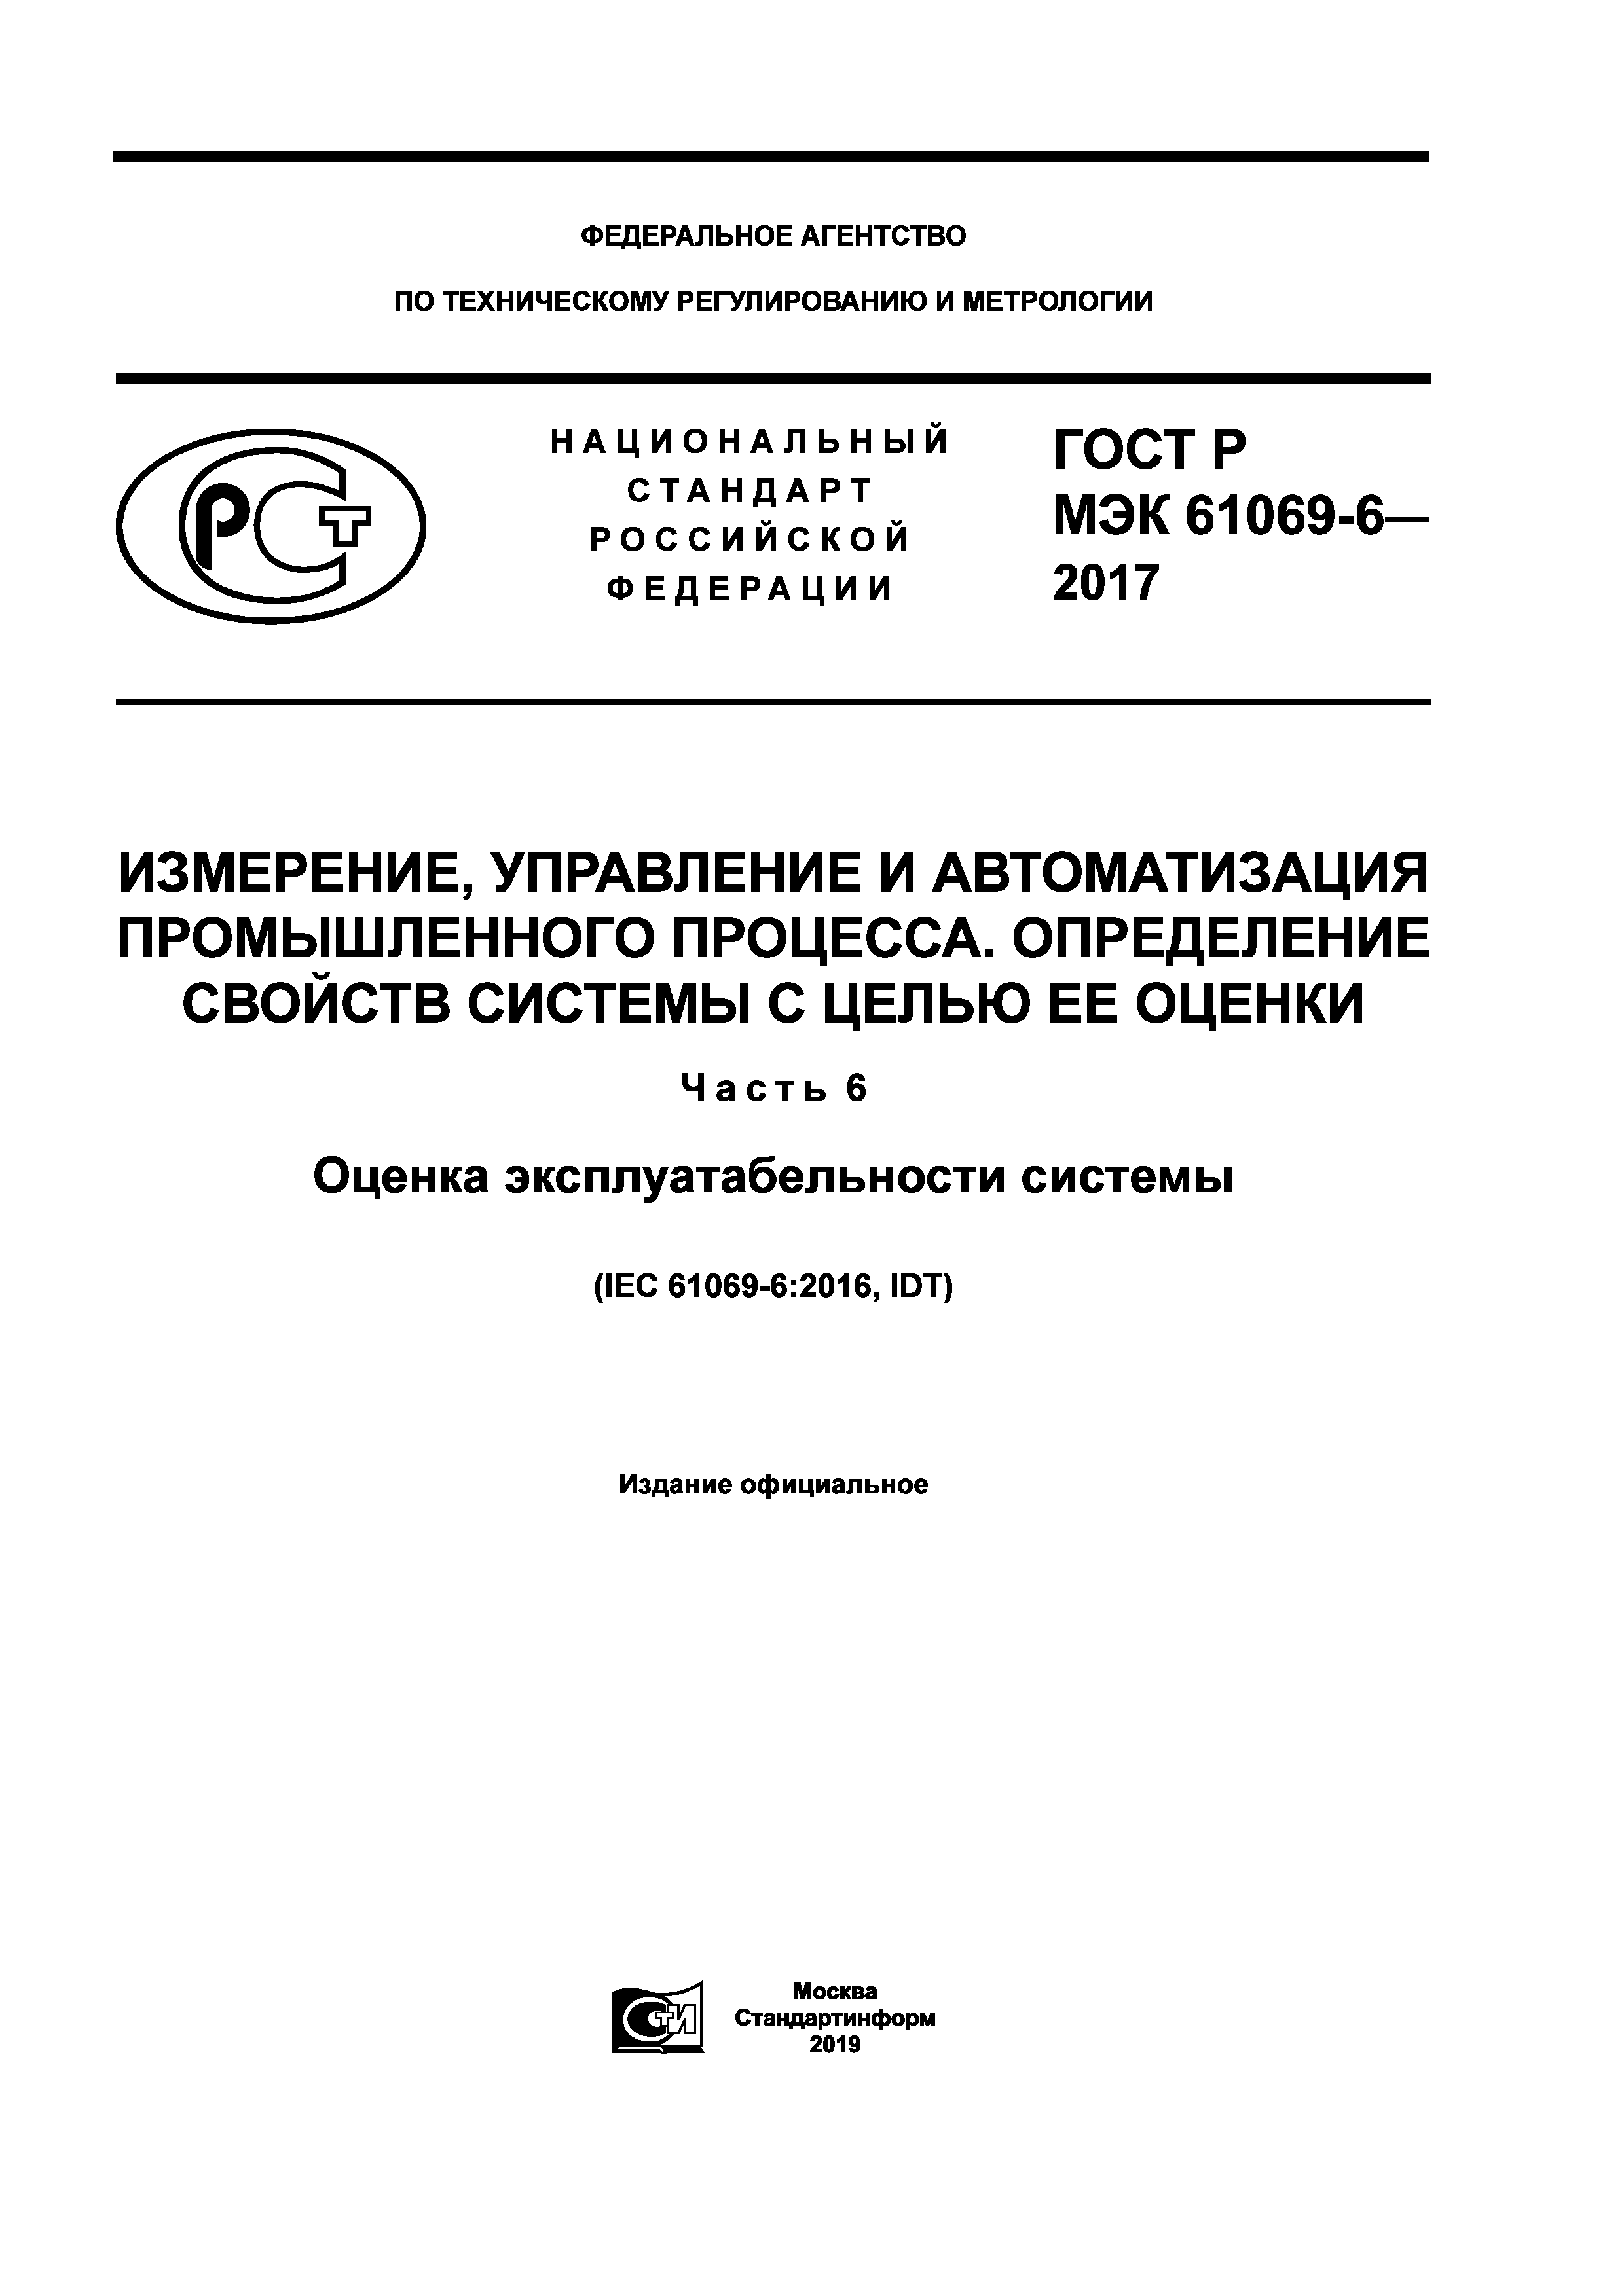 ГОСТ Р МЭК 61069-6-2017